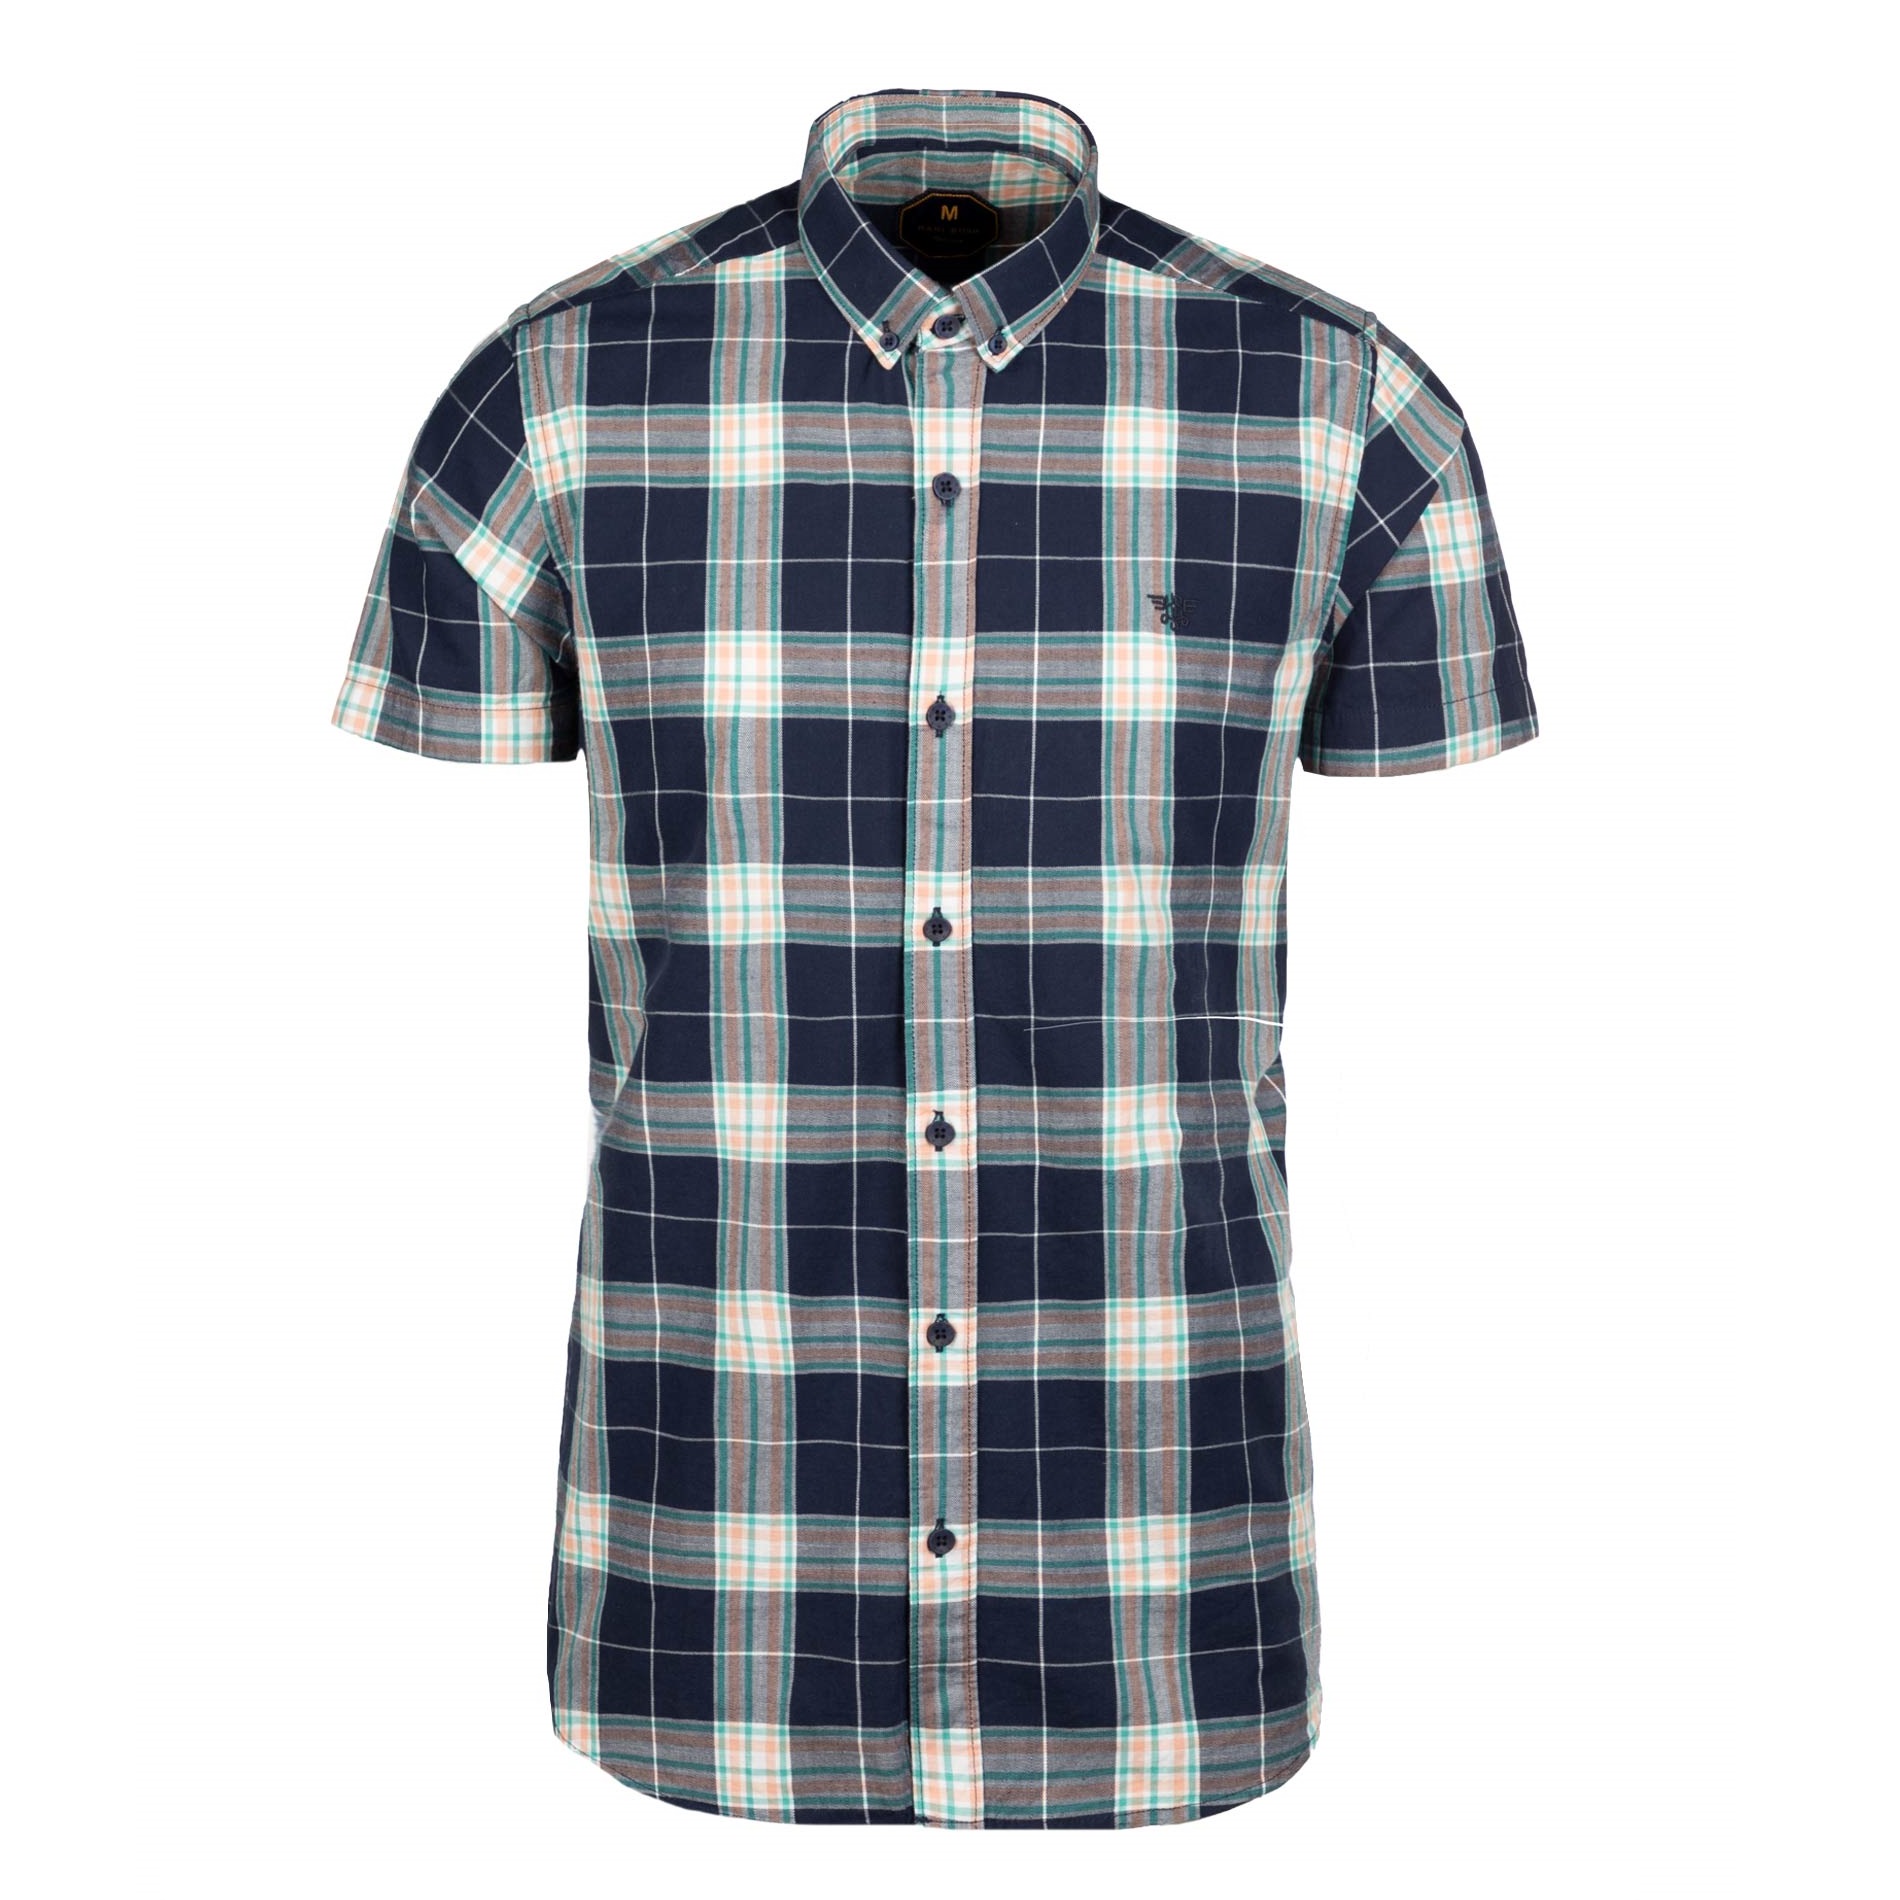 نکته خرید - قیمت روز پیراهن آستین کوتاه مردانه مدل SABS 4045 خرید